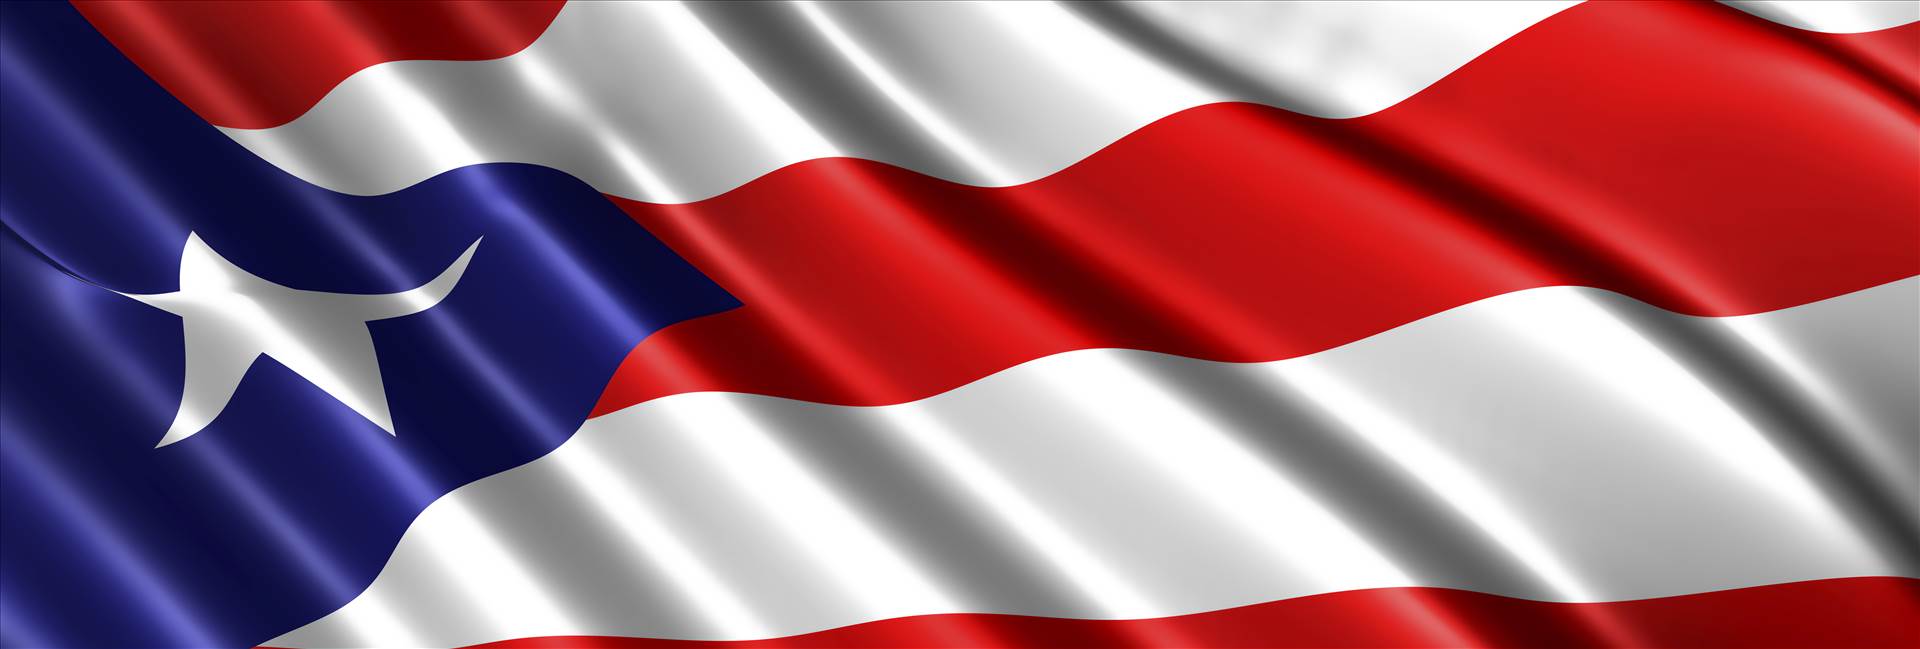 Puerto Rican Flag.jpg  by Michael